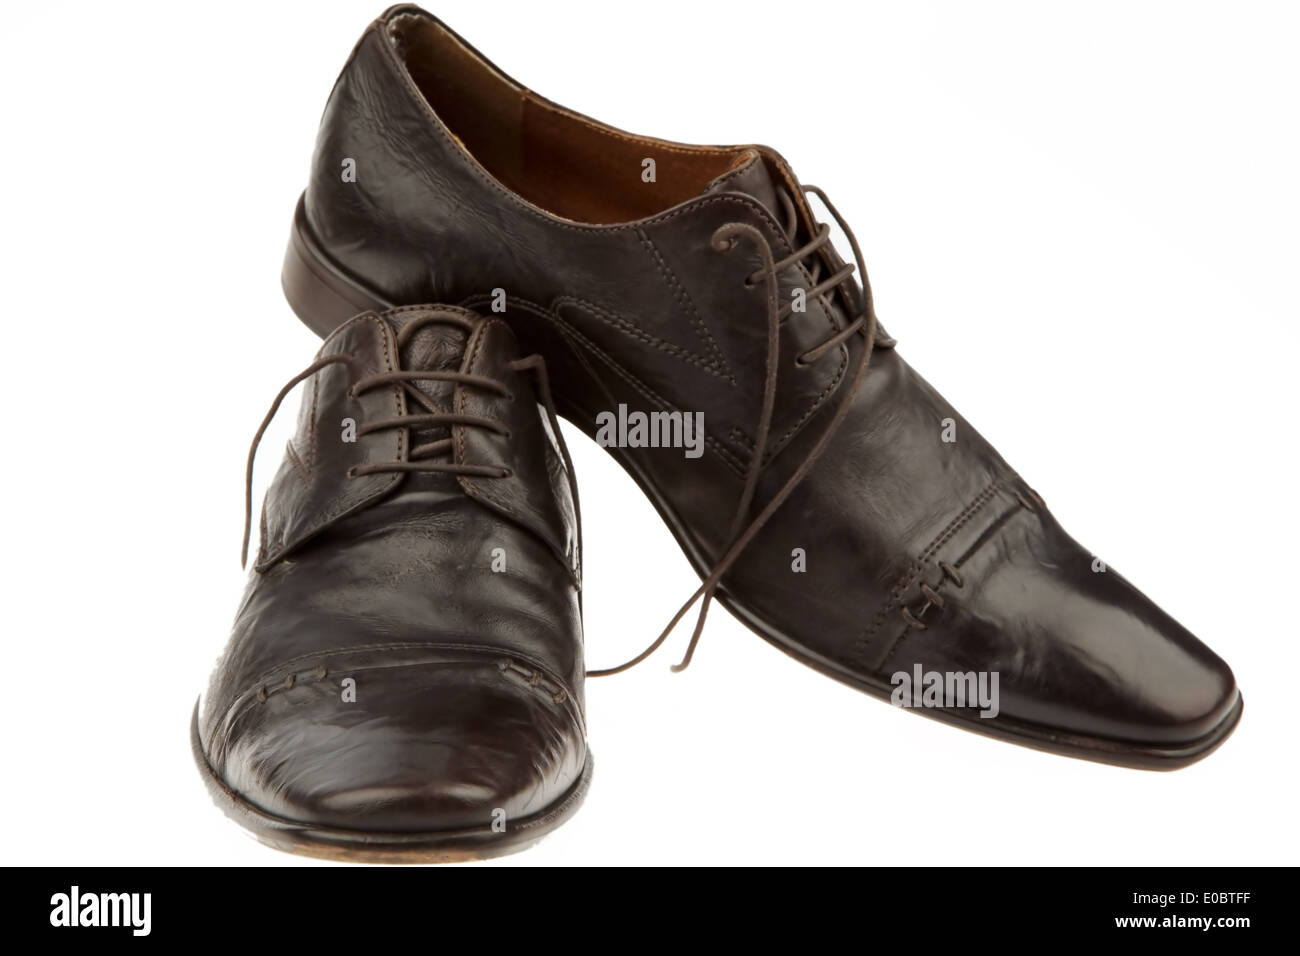 Uomo di scarpe uomo le scarpe da uomo uomini vestiti commerciale calzature abbigliamento business vestiti business imprenditori business look commerci Foto Stock